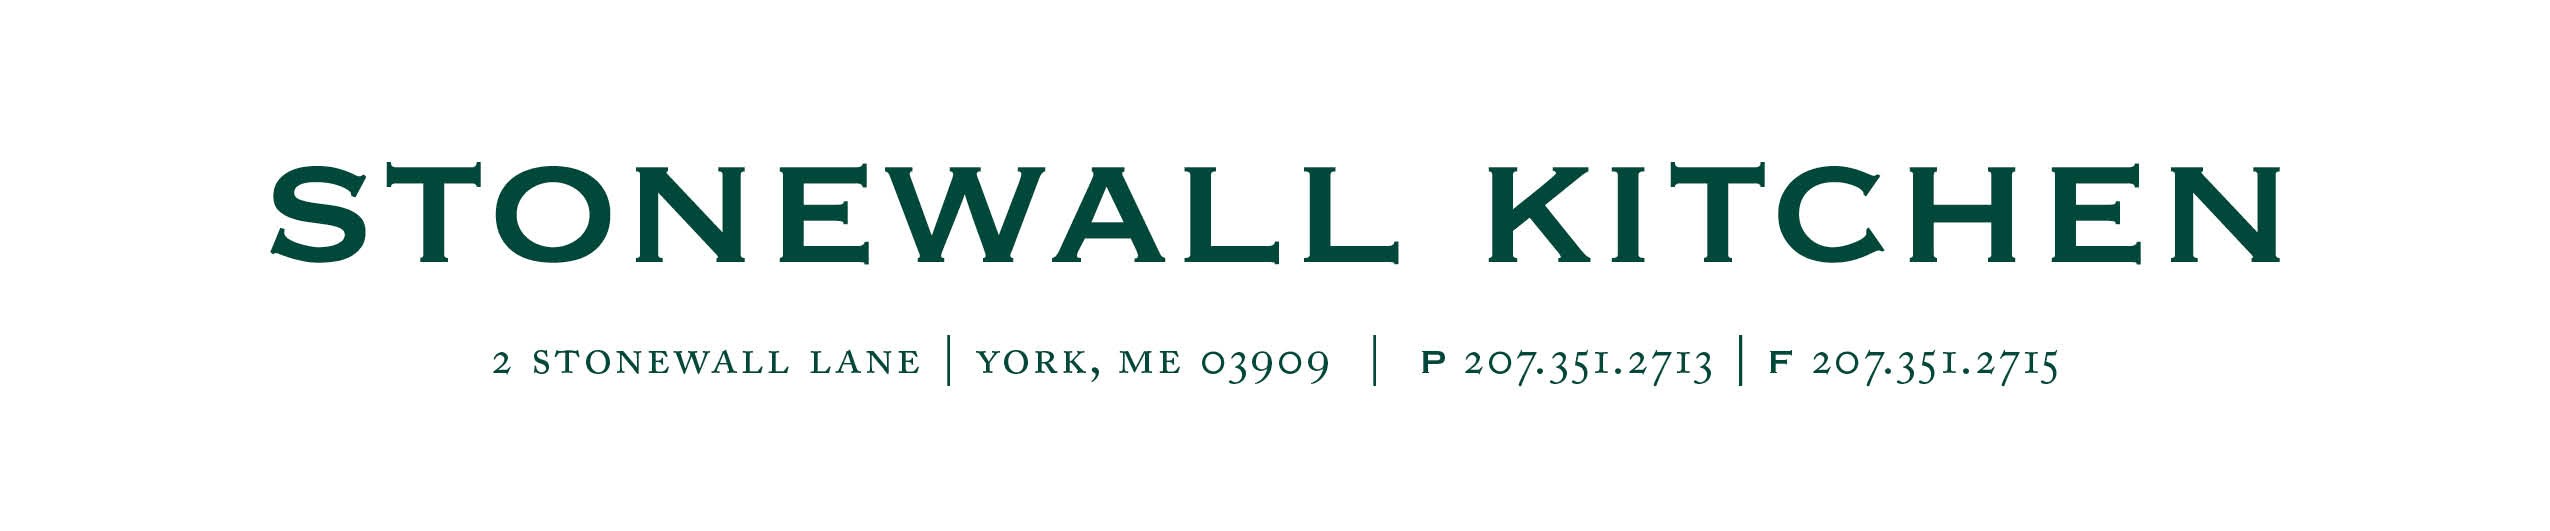 Stonewall KItchen Logo